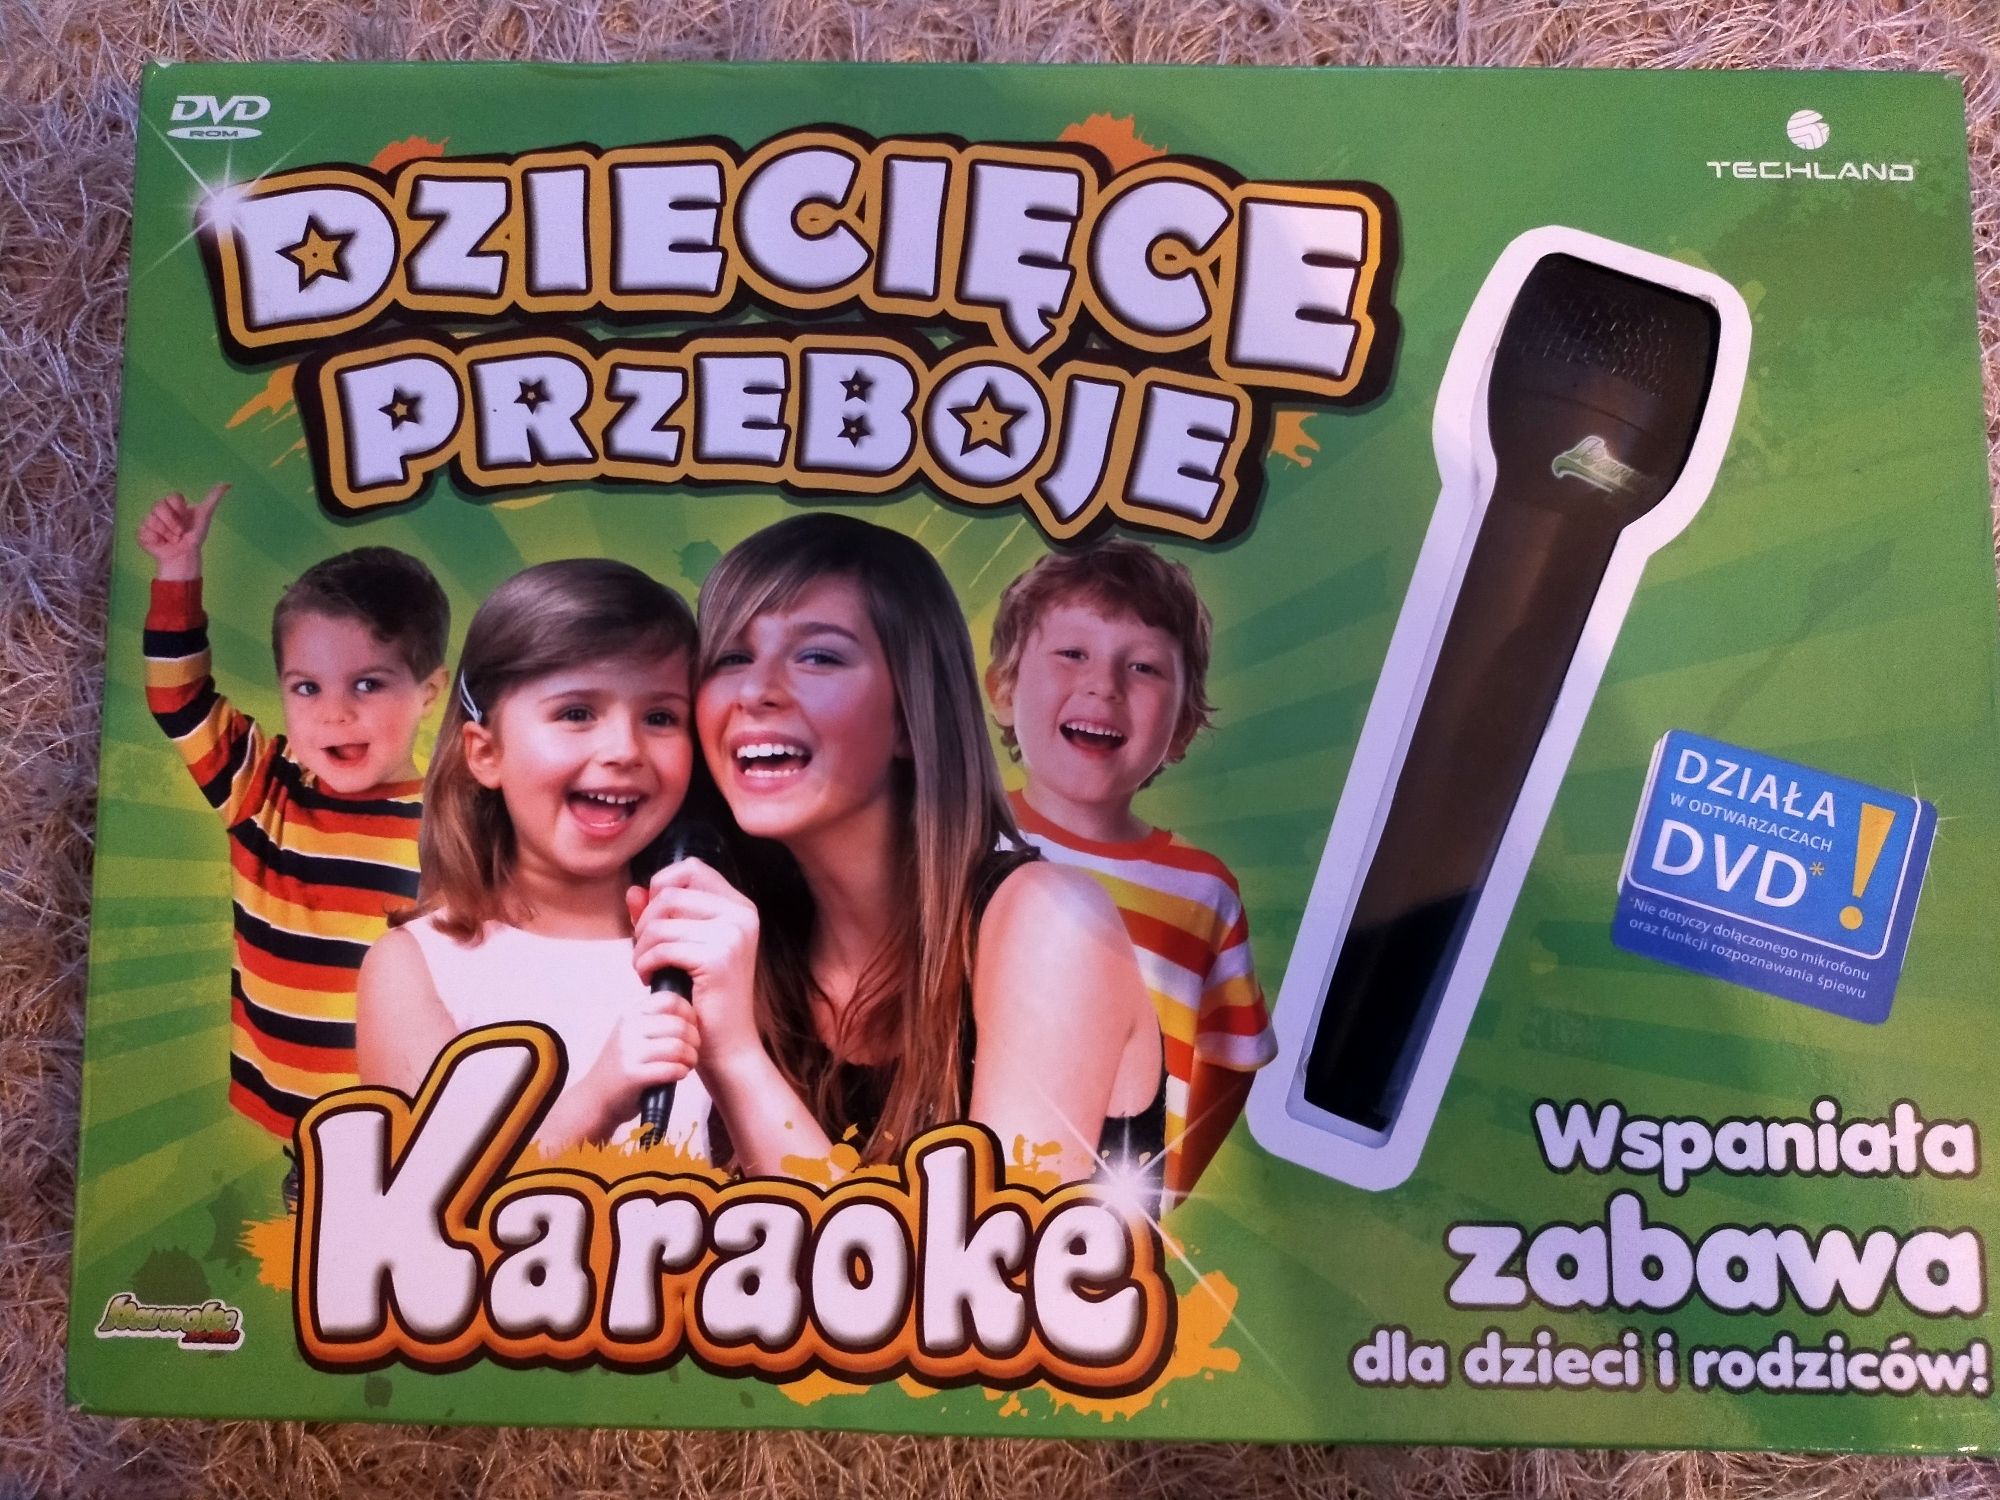 Karaoke dla dzieci